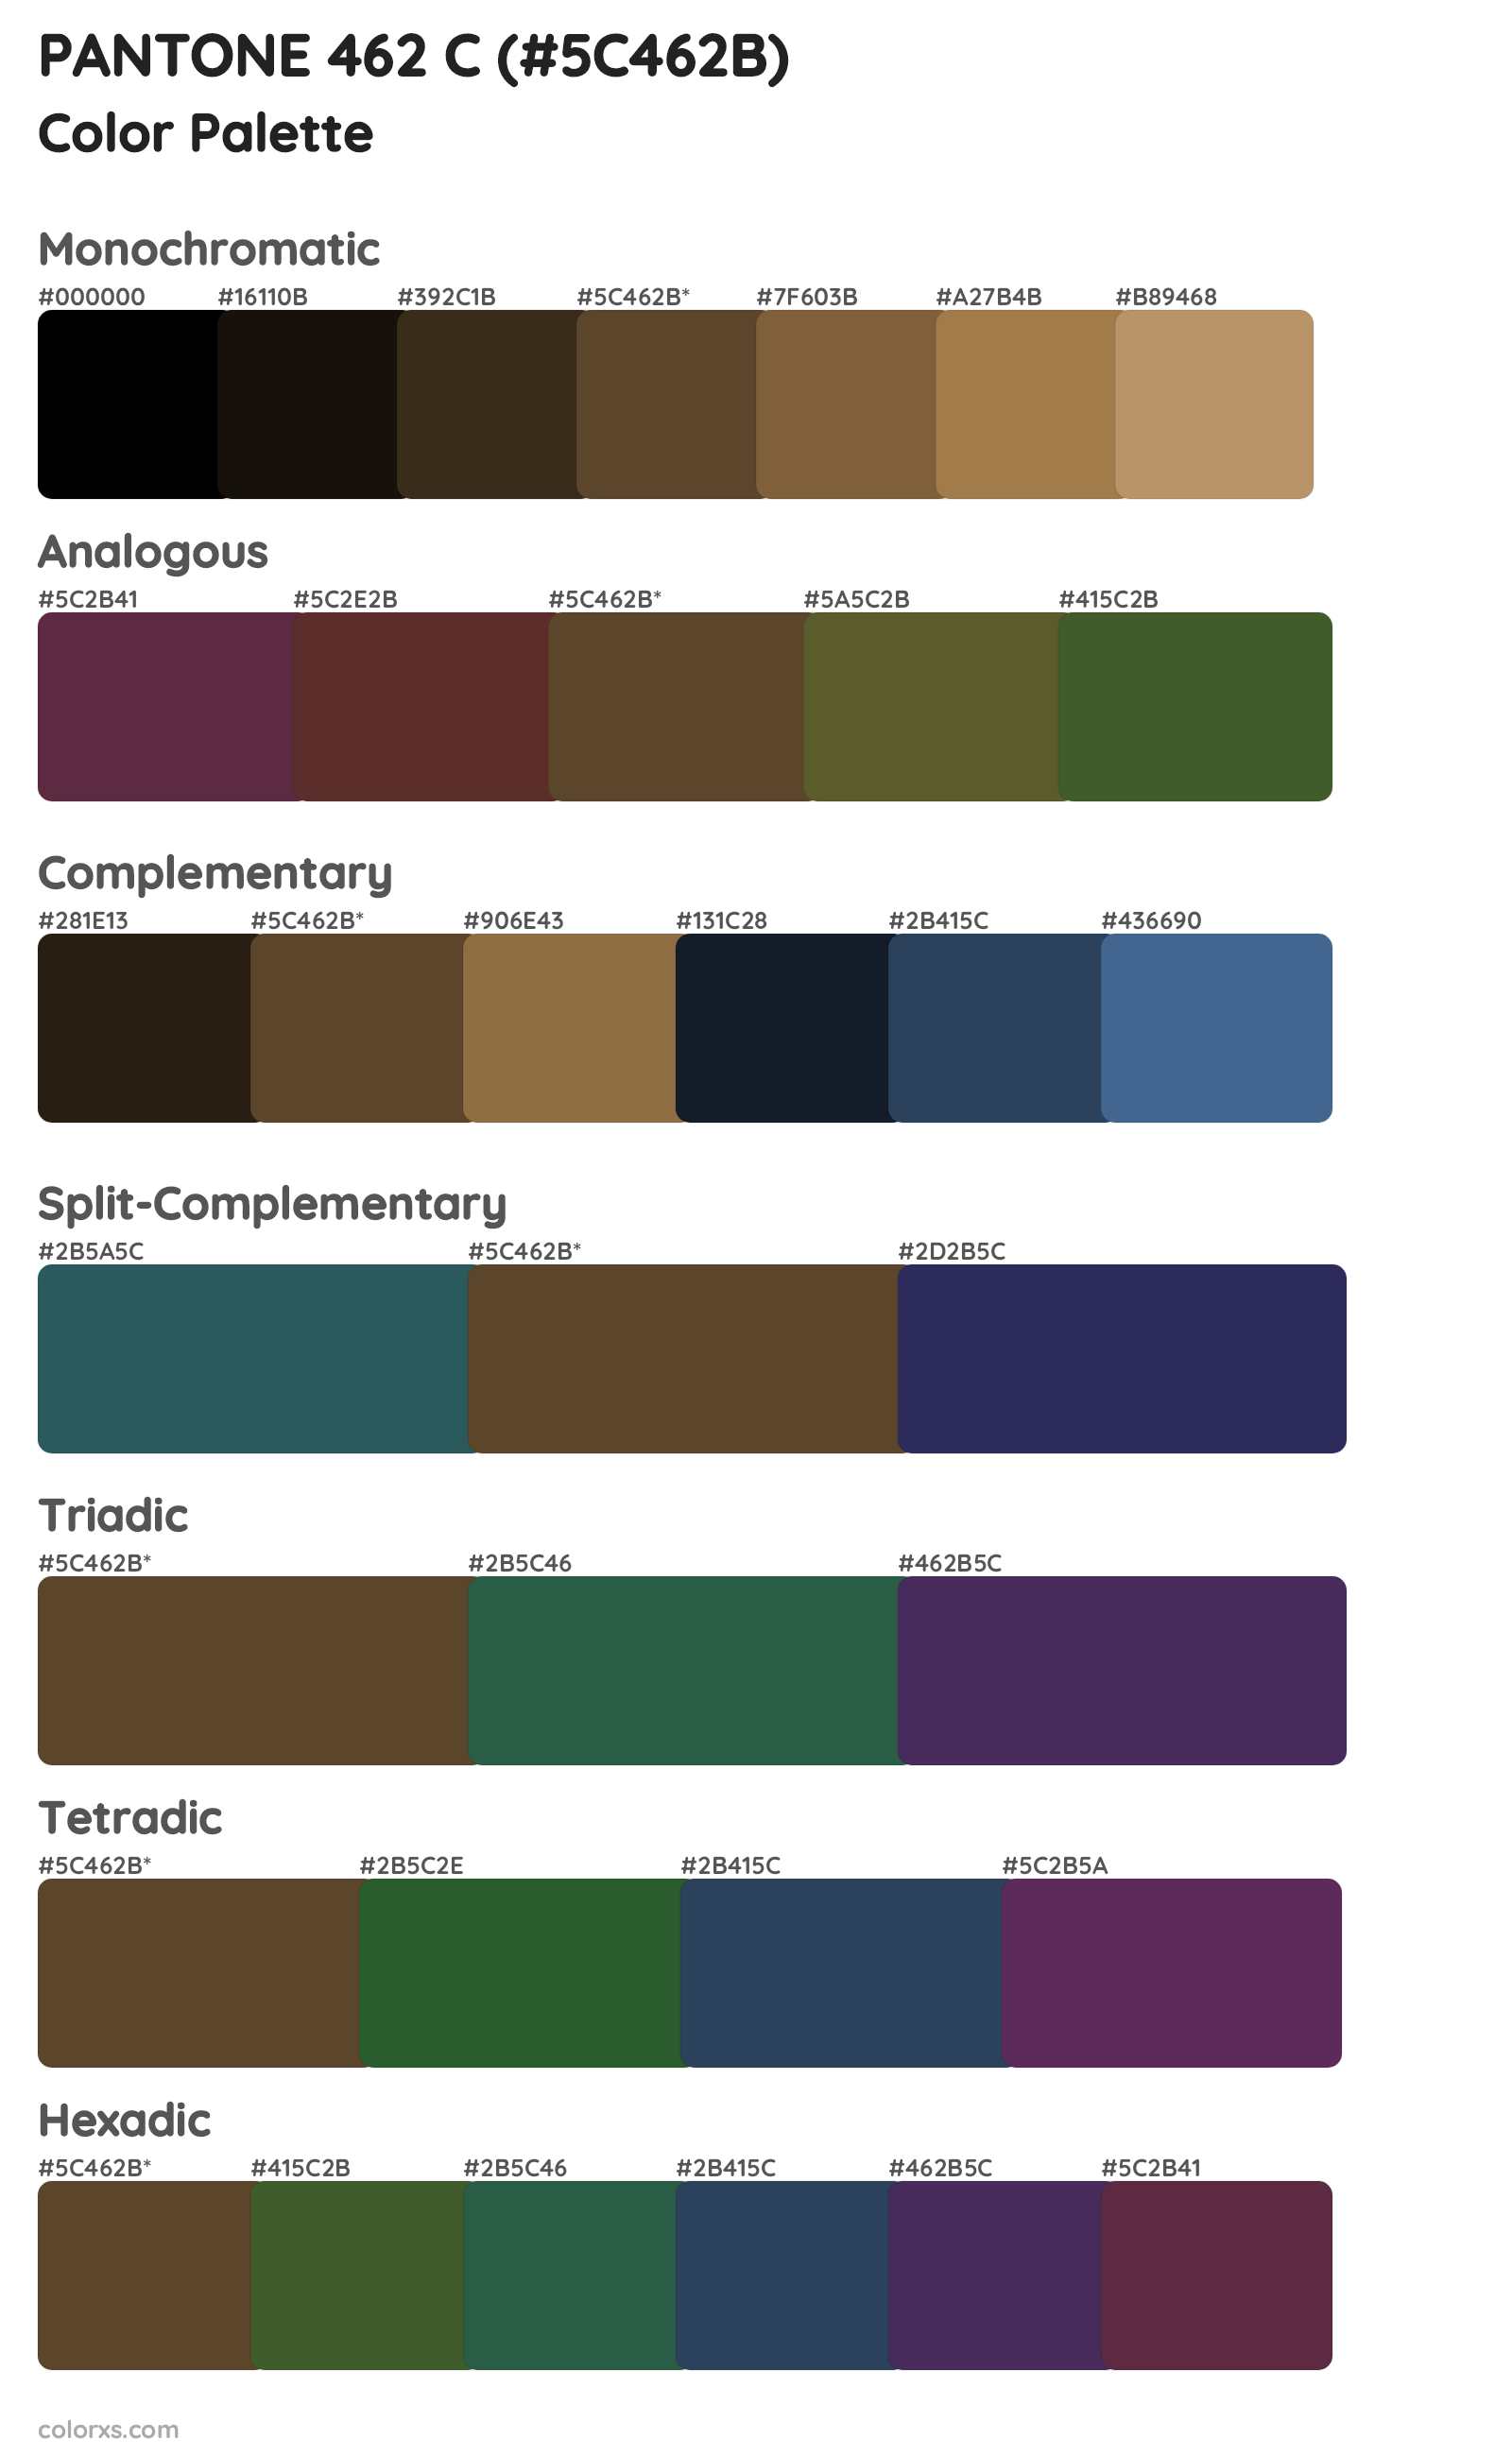 PANTONE 462 C Color Scheme Palettes